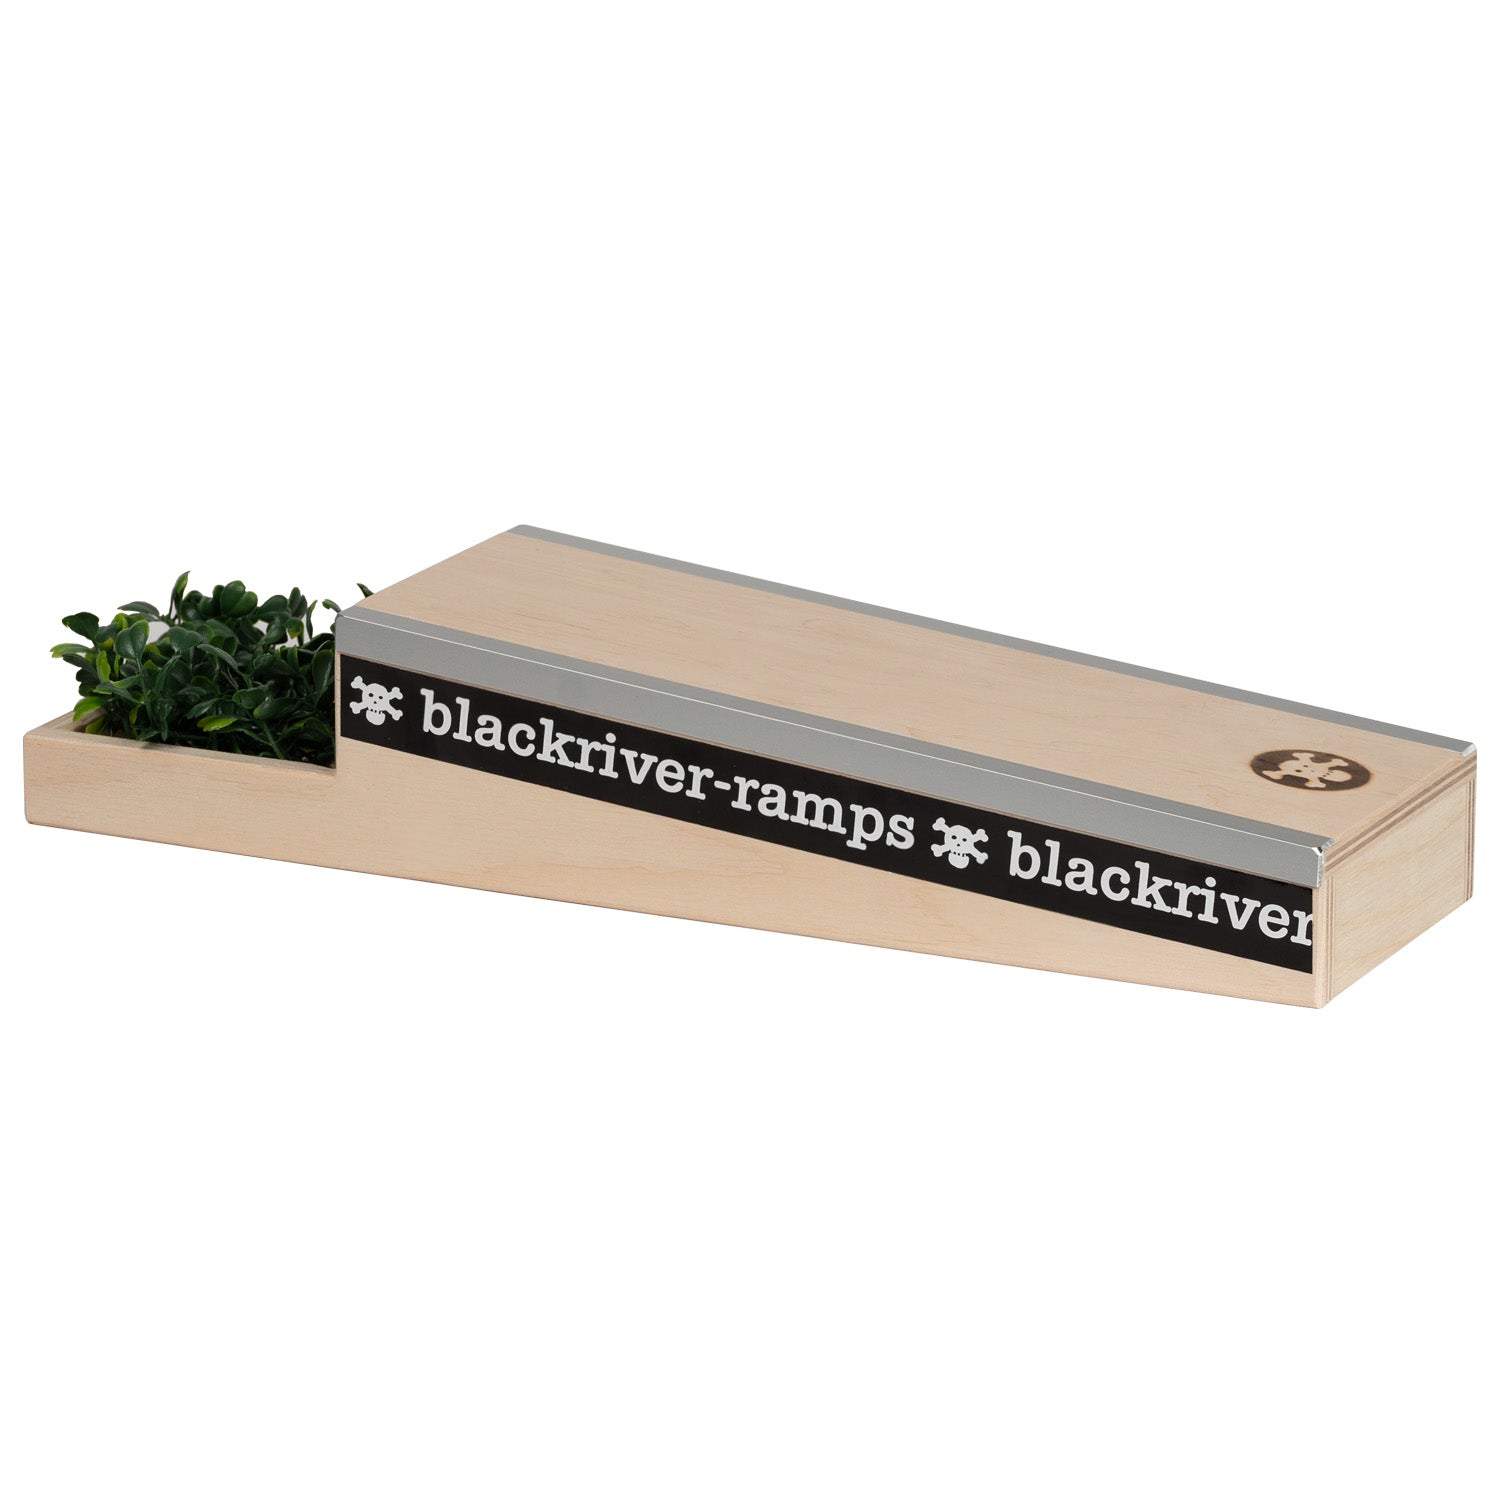 Blackriver ramps - Box 4